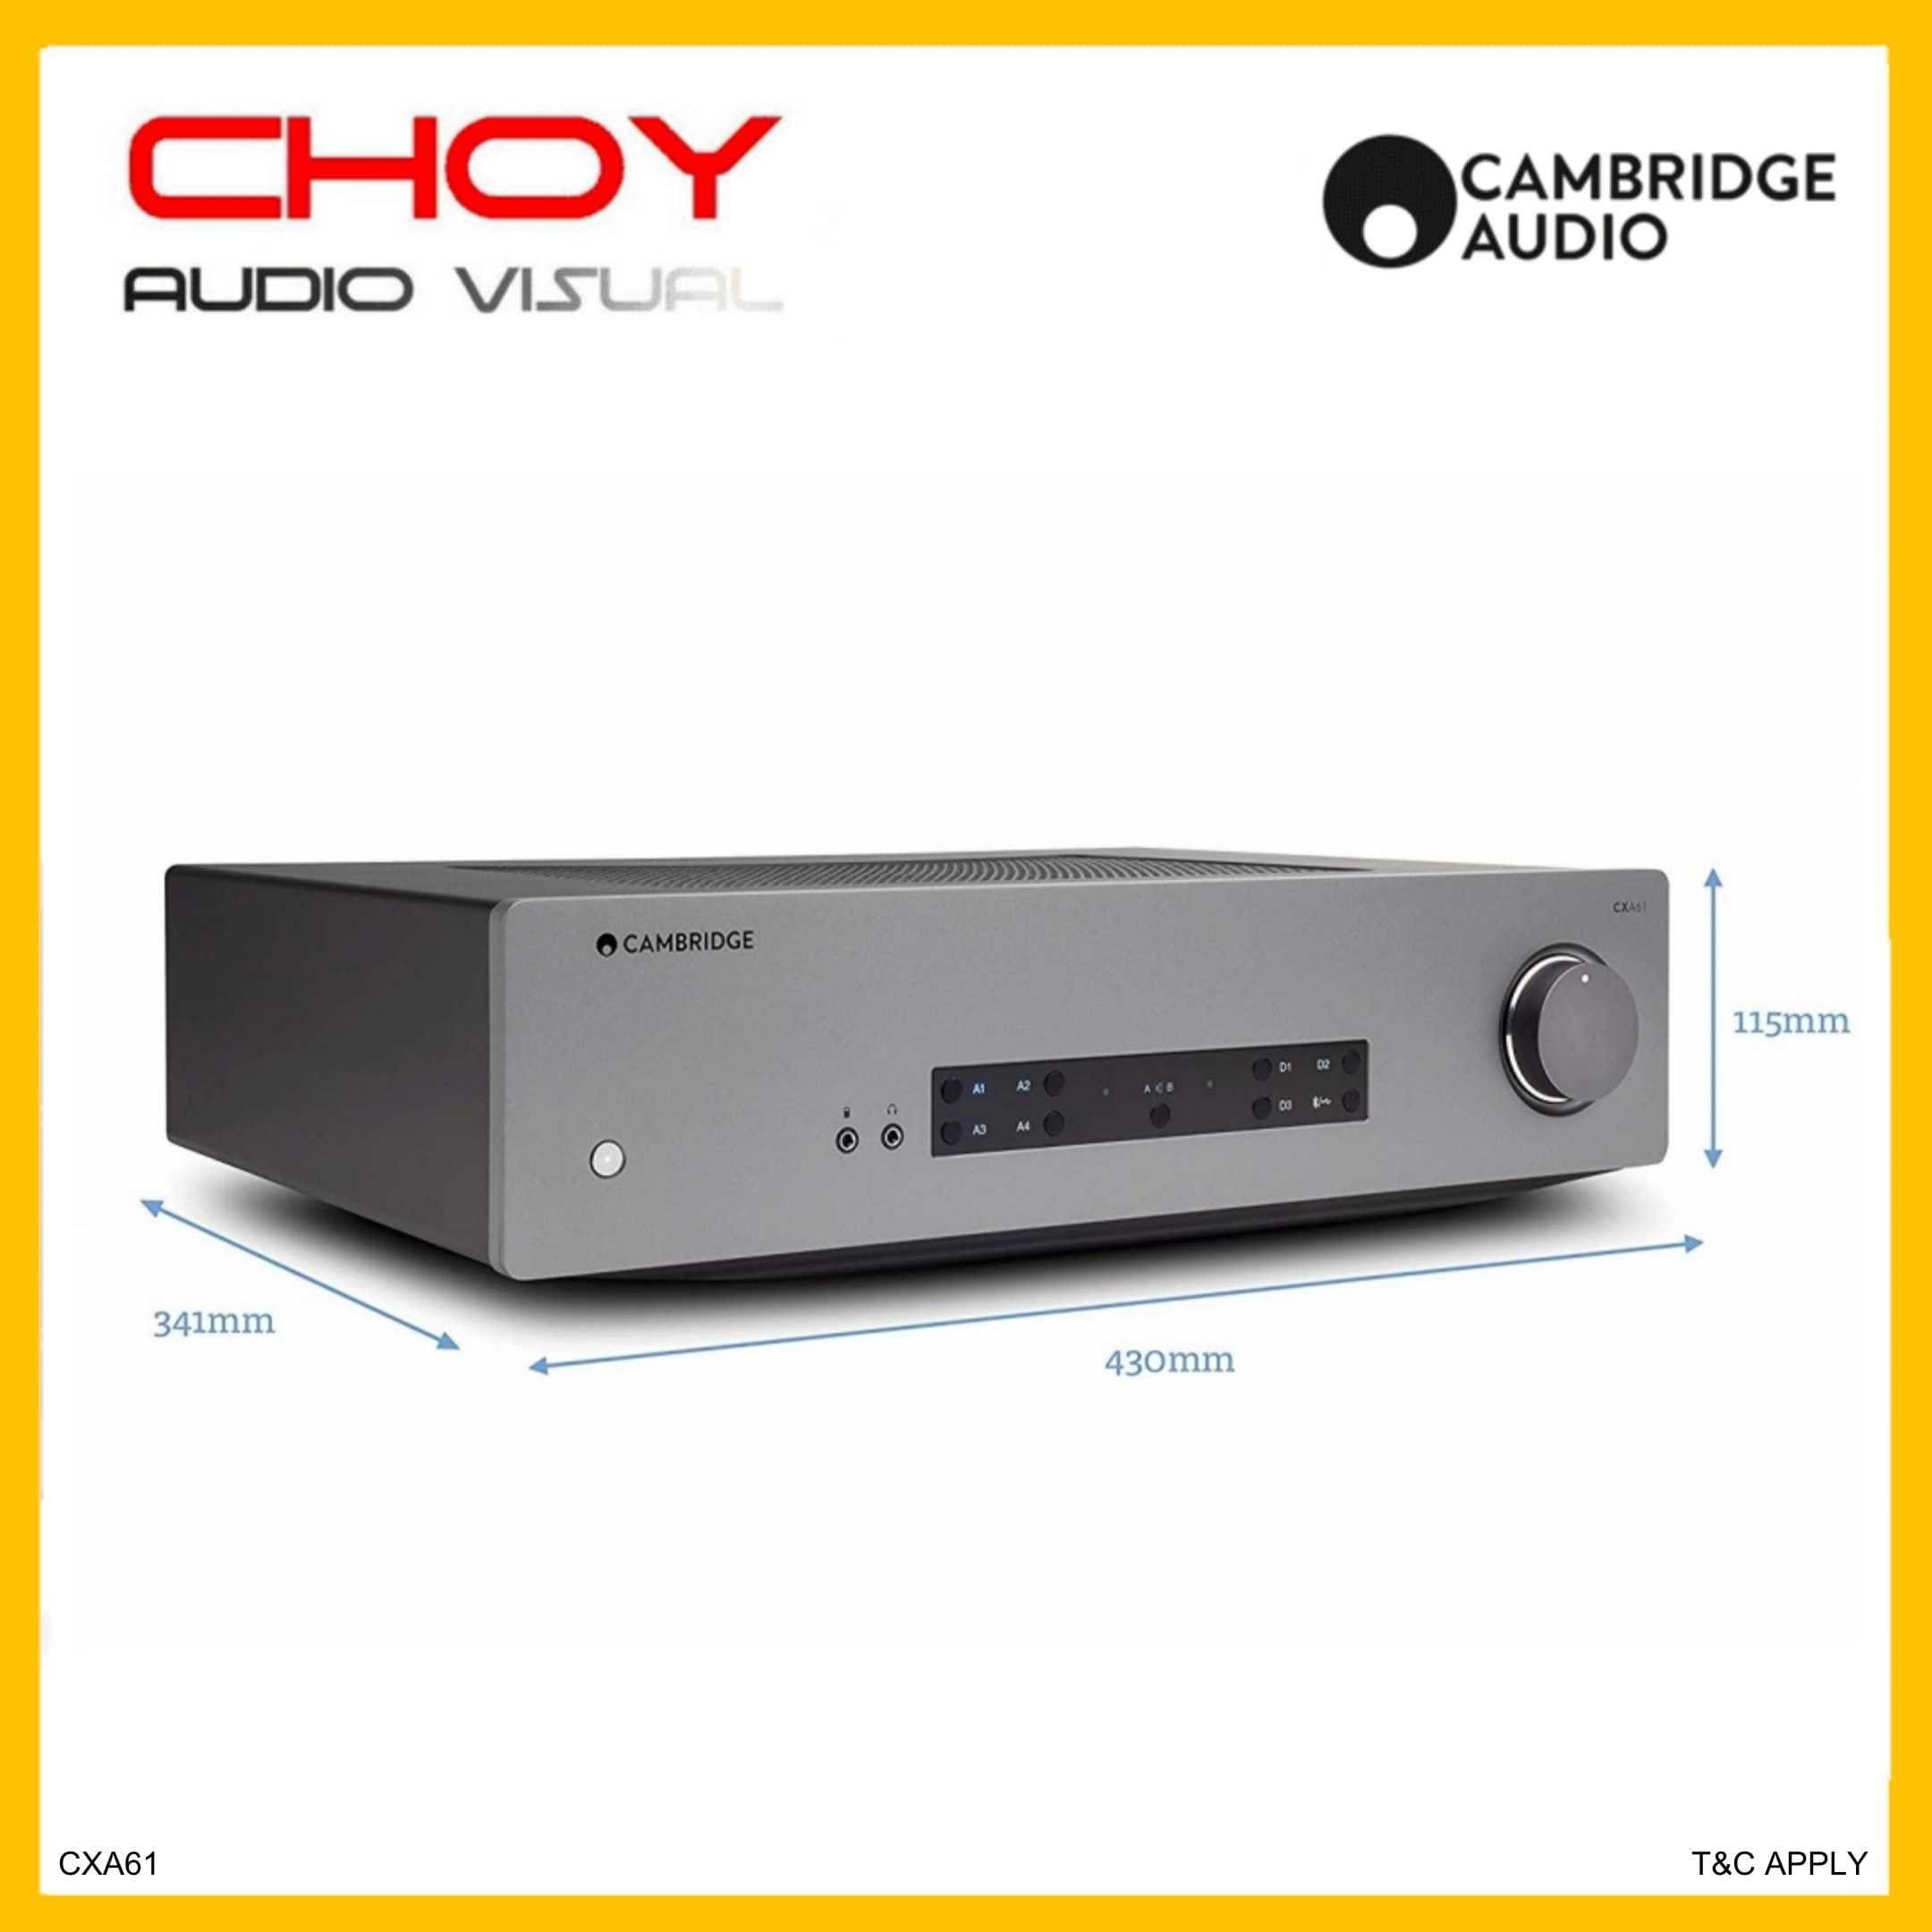 Cambridge Audio CXA61